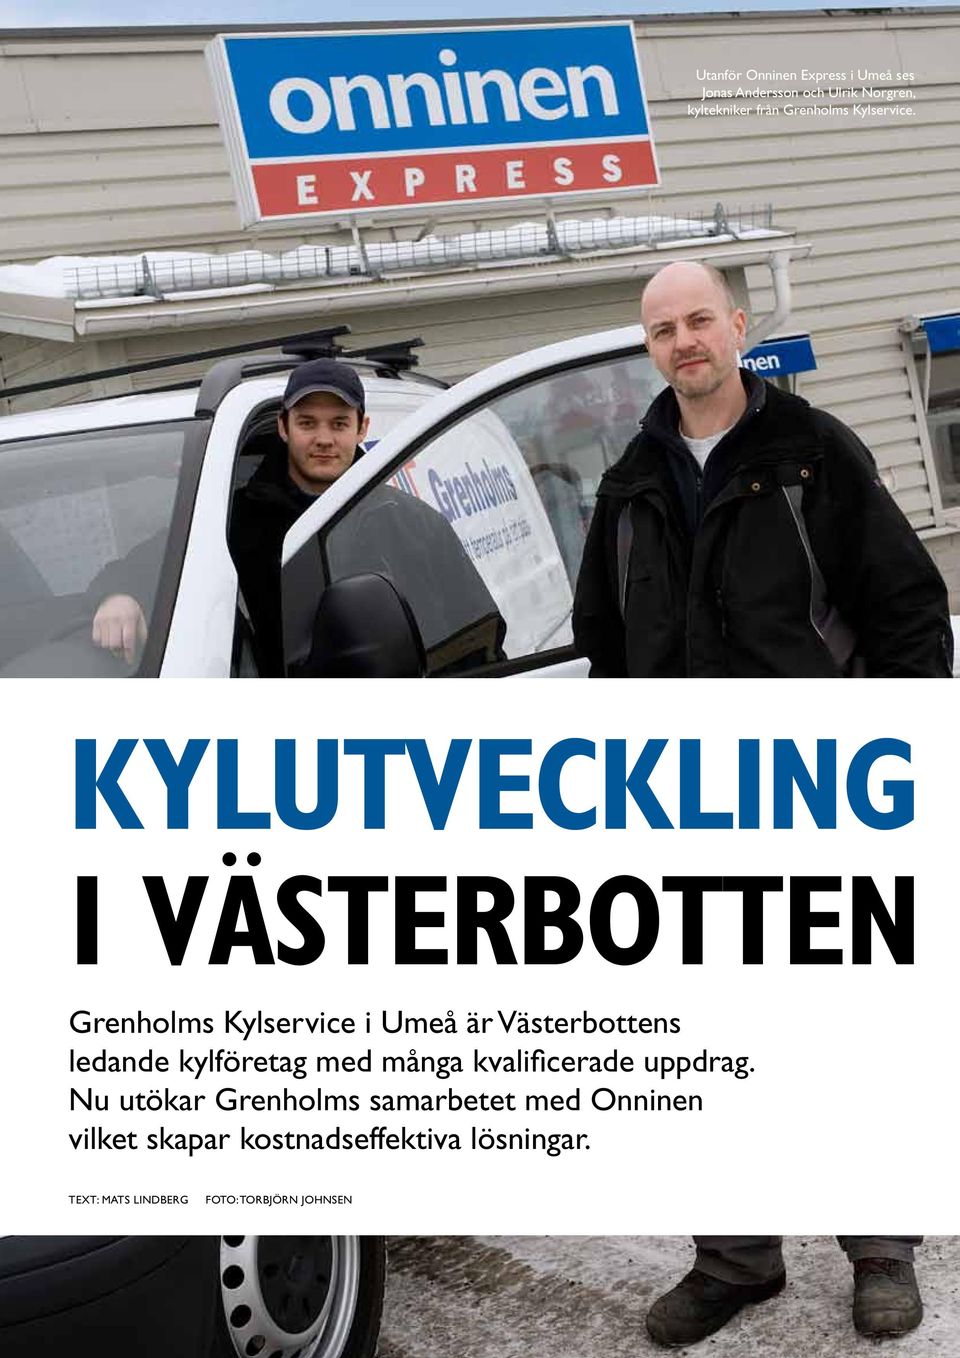 kylutveckling i västerbotten Bilder kommer Grenholms Kylservice i Umeå är Västerbottens ledande